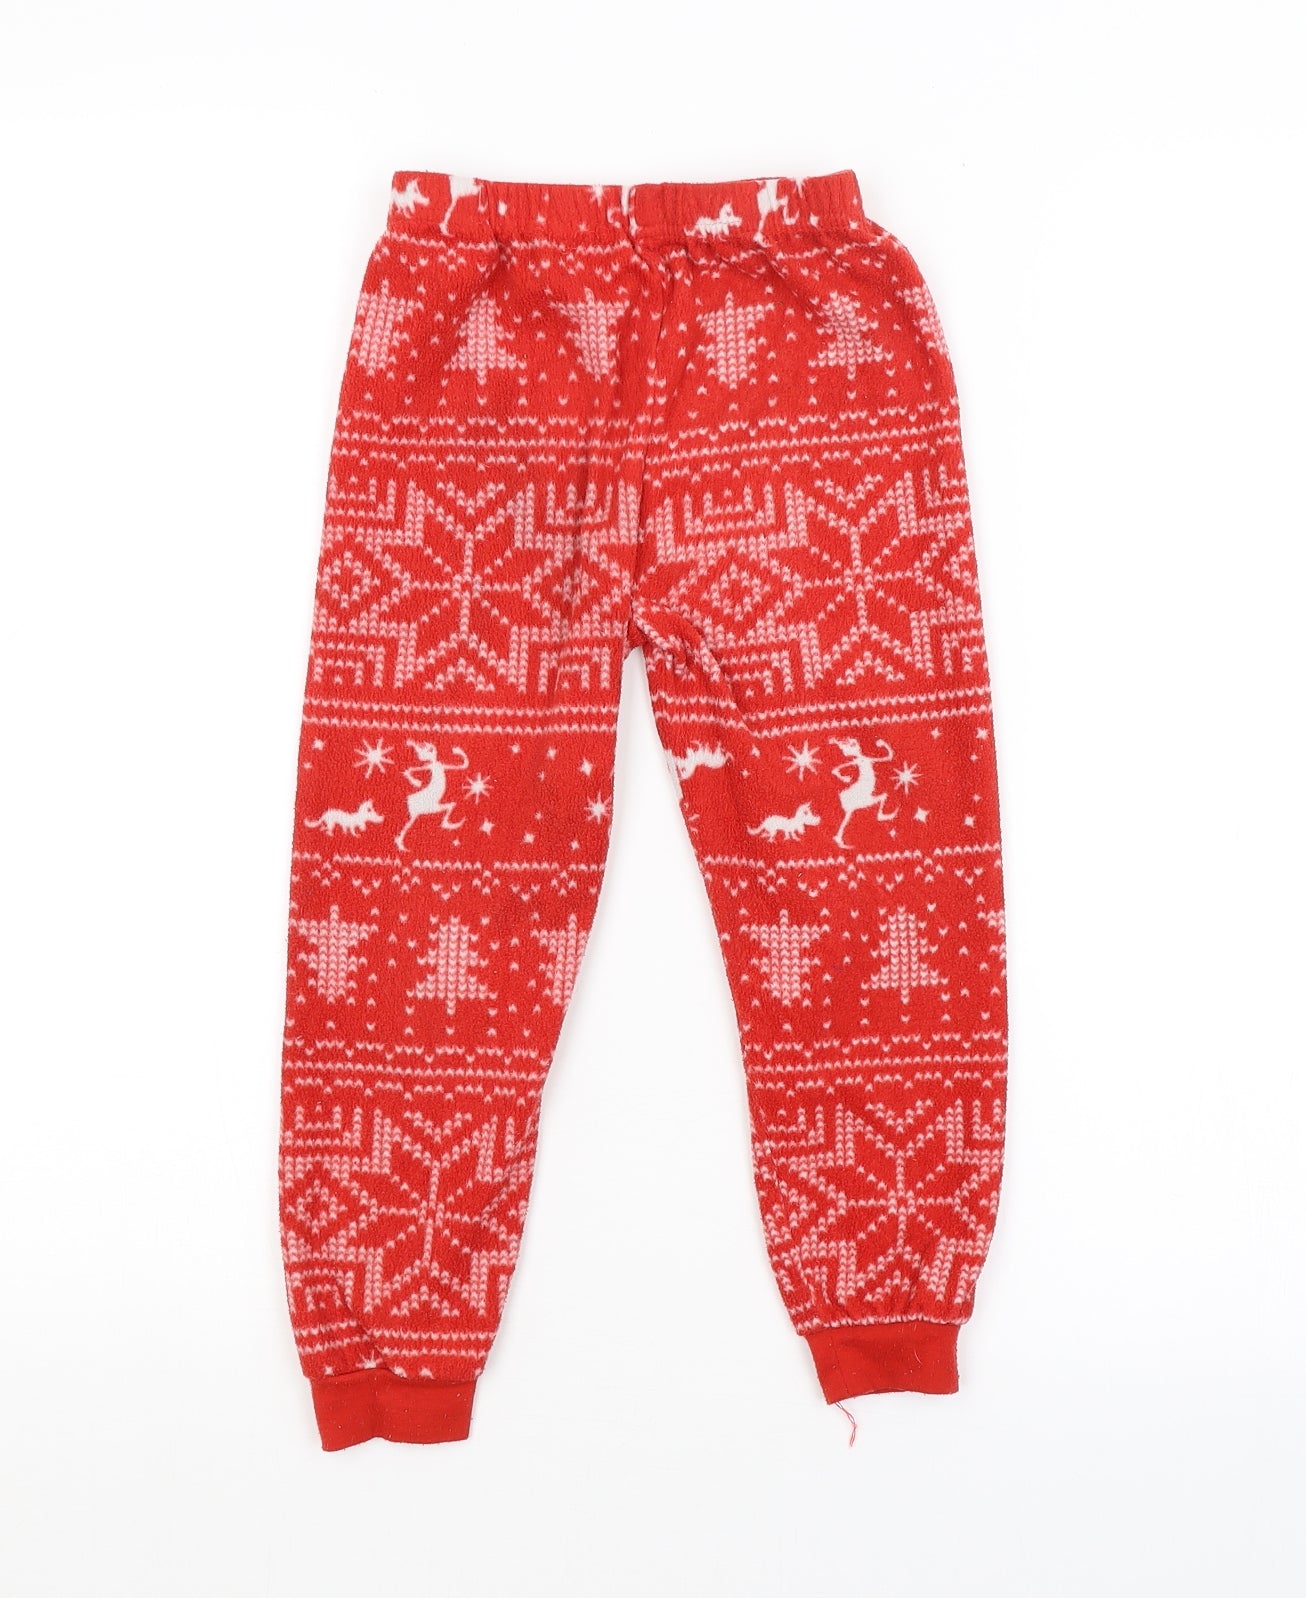 Primark Boys Red Argyle/Diamond   Pyjama Pants Size 4-5 Years  - CHRISTMAS